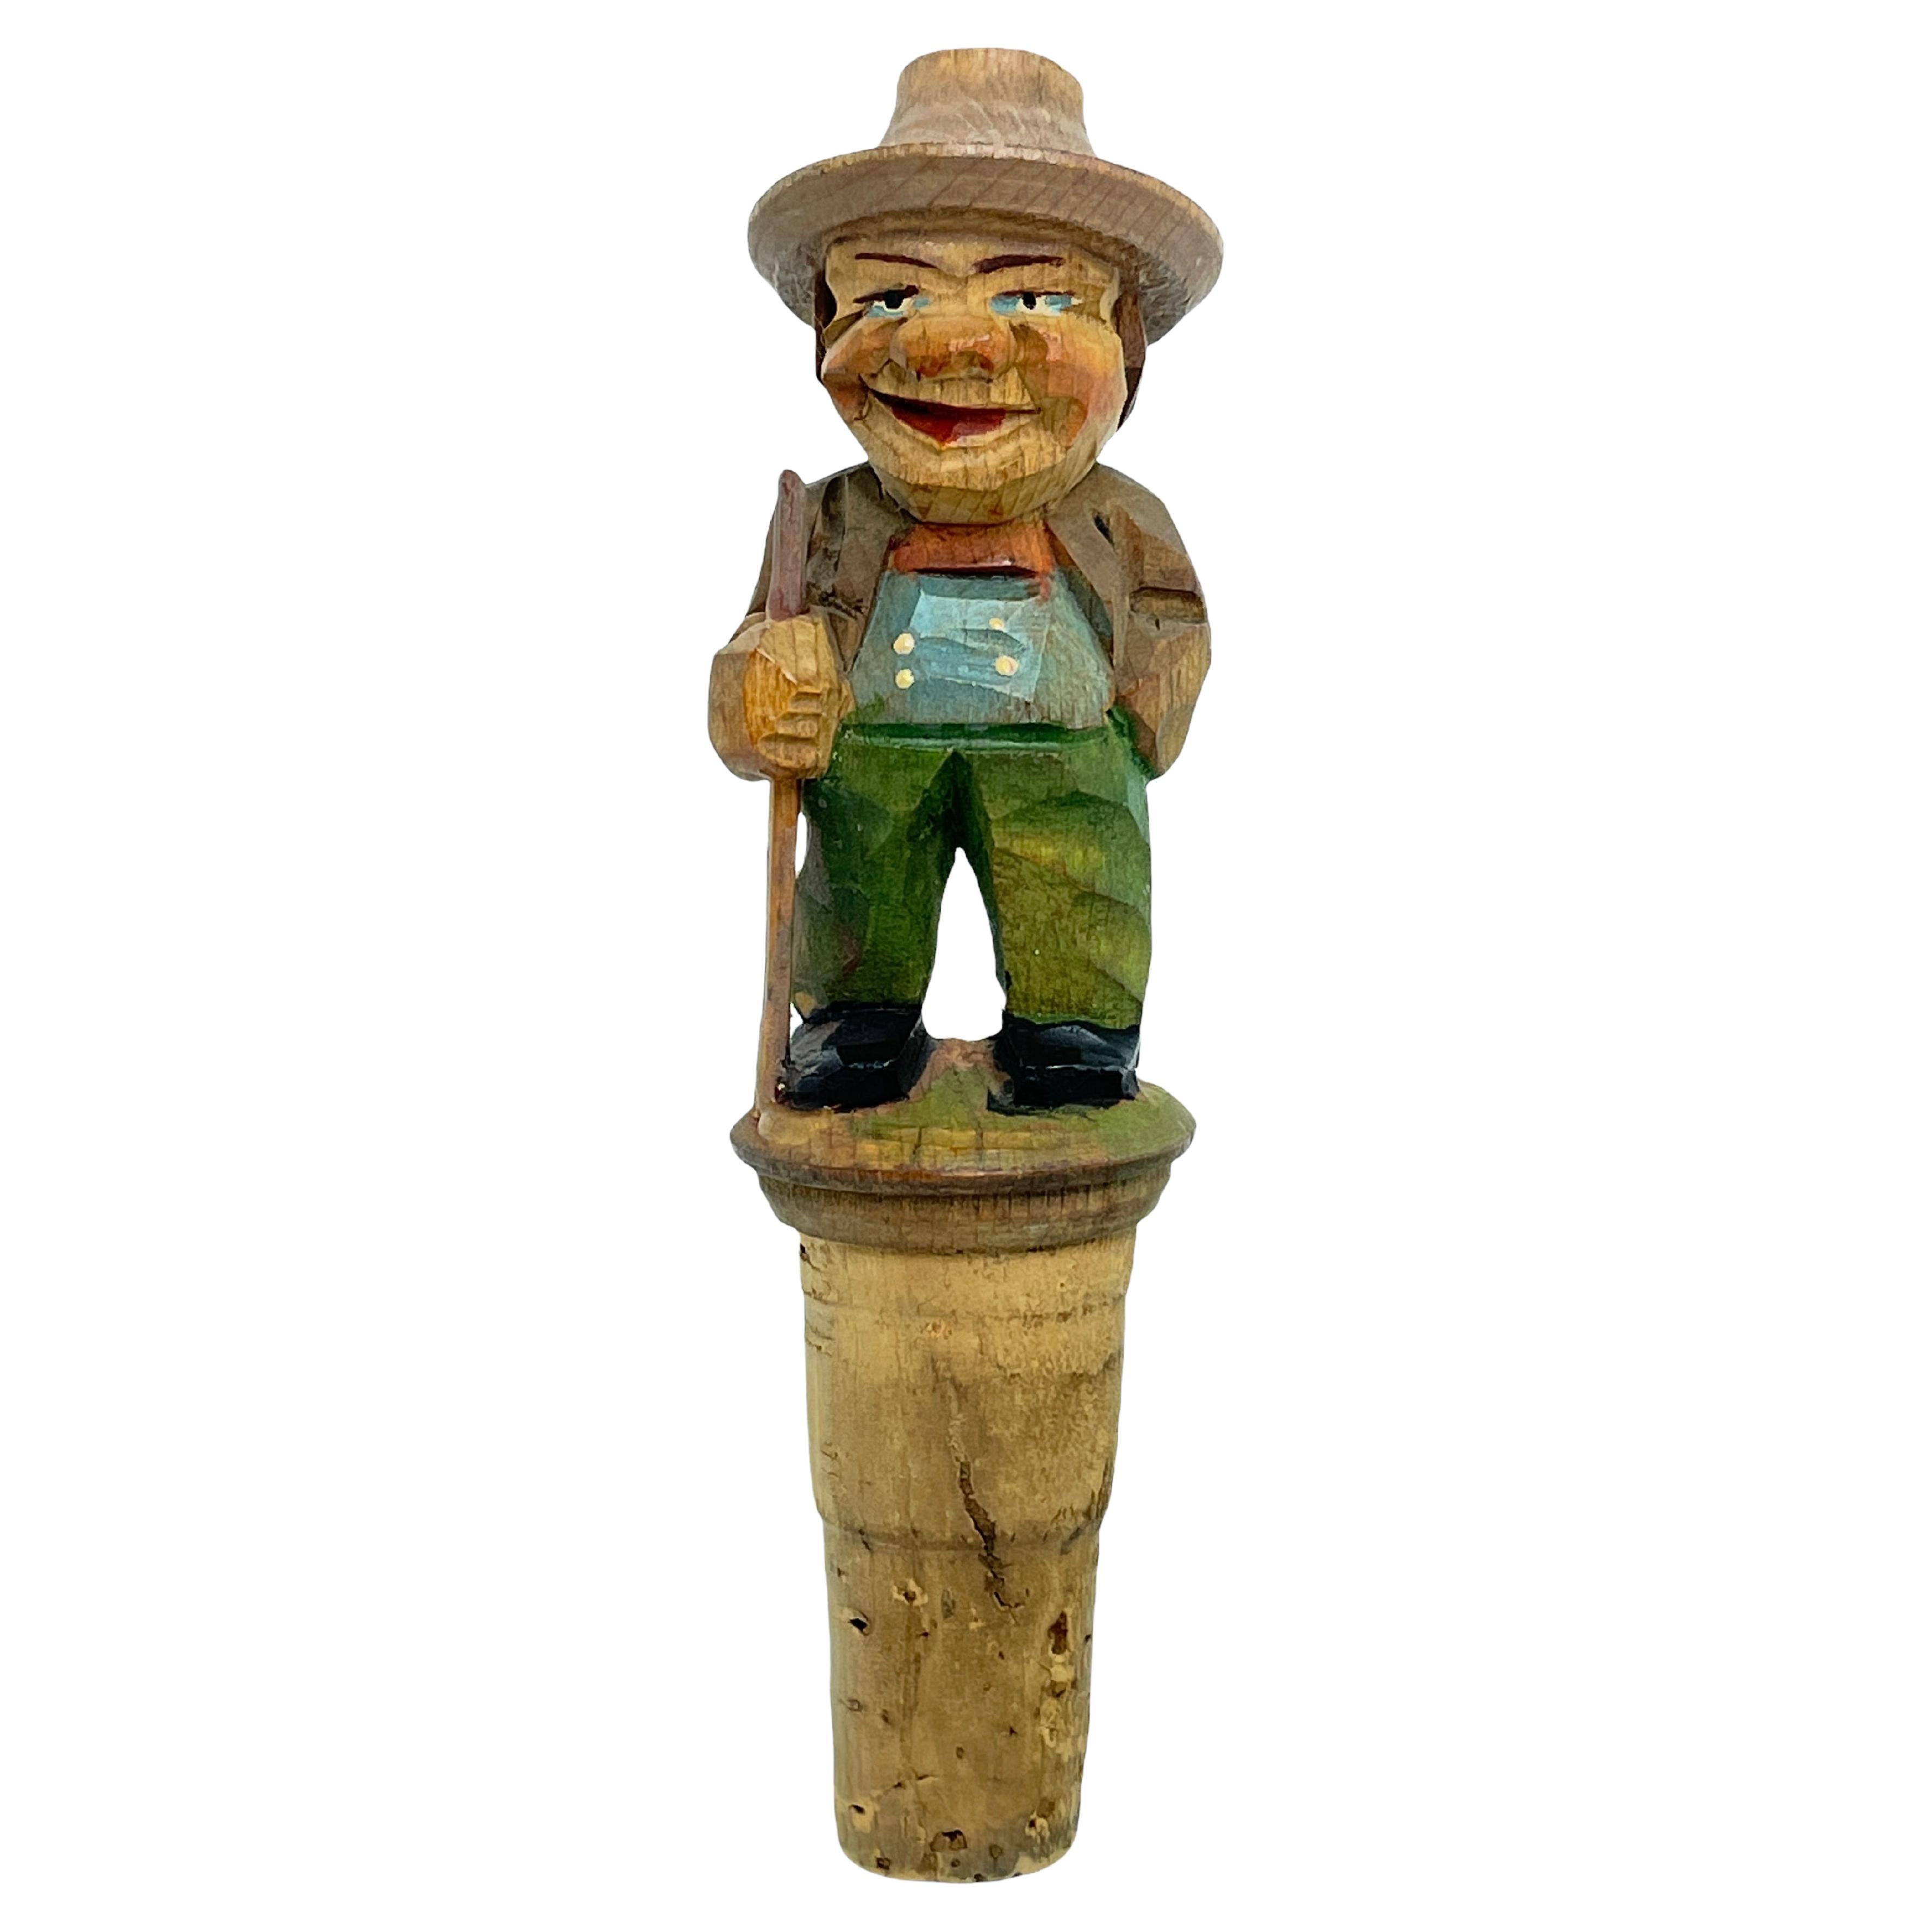 Anri Wood Carved Figural Tramp Bottle Topper Stopper, 1950s